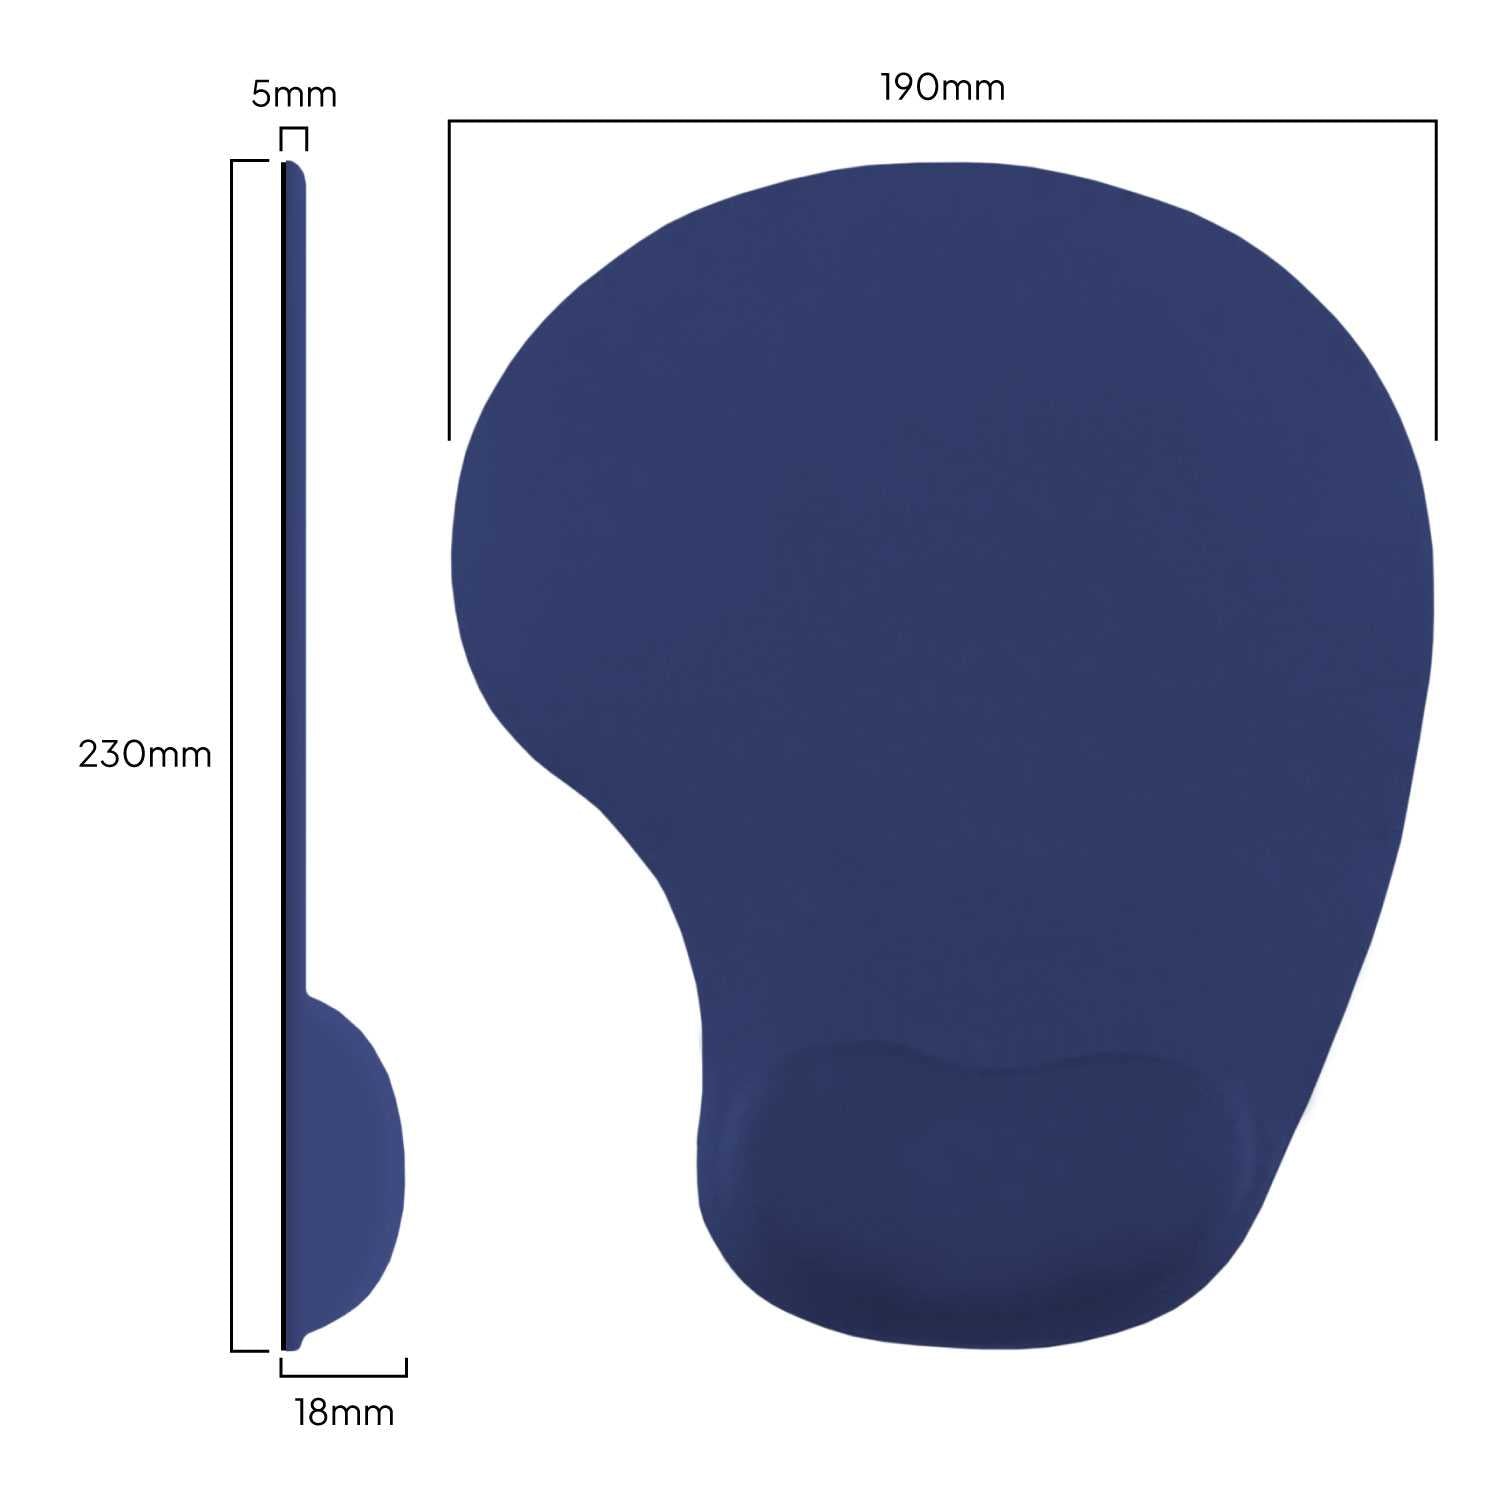 Alfombrilla de Ratón con Reposamuñecas de Gel, ergonómica, de Color Azul Oscuro, Base de Goma Antideslizante, 23 cm x 19 cm